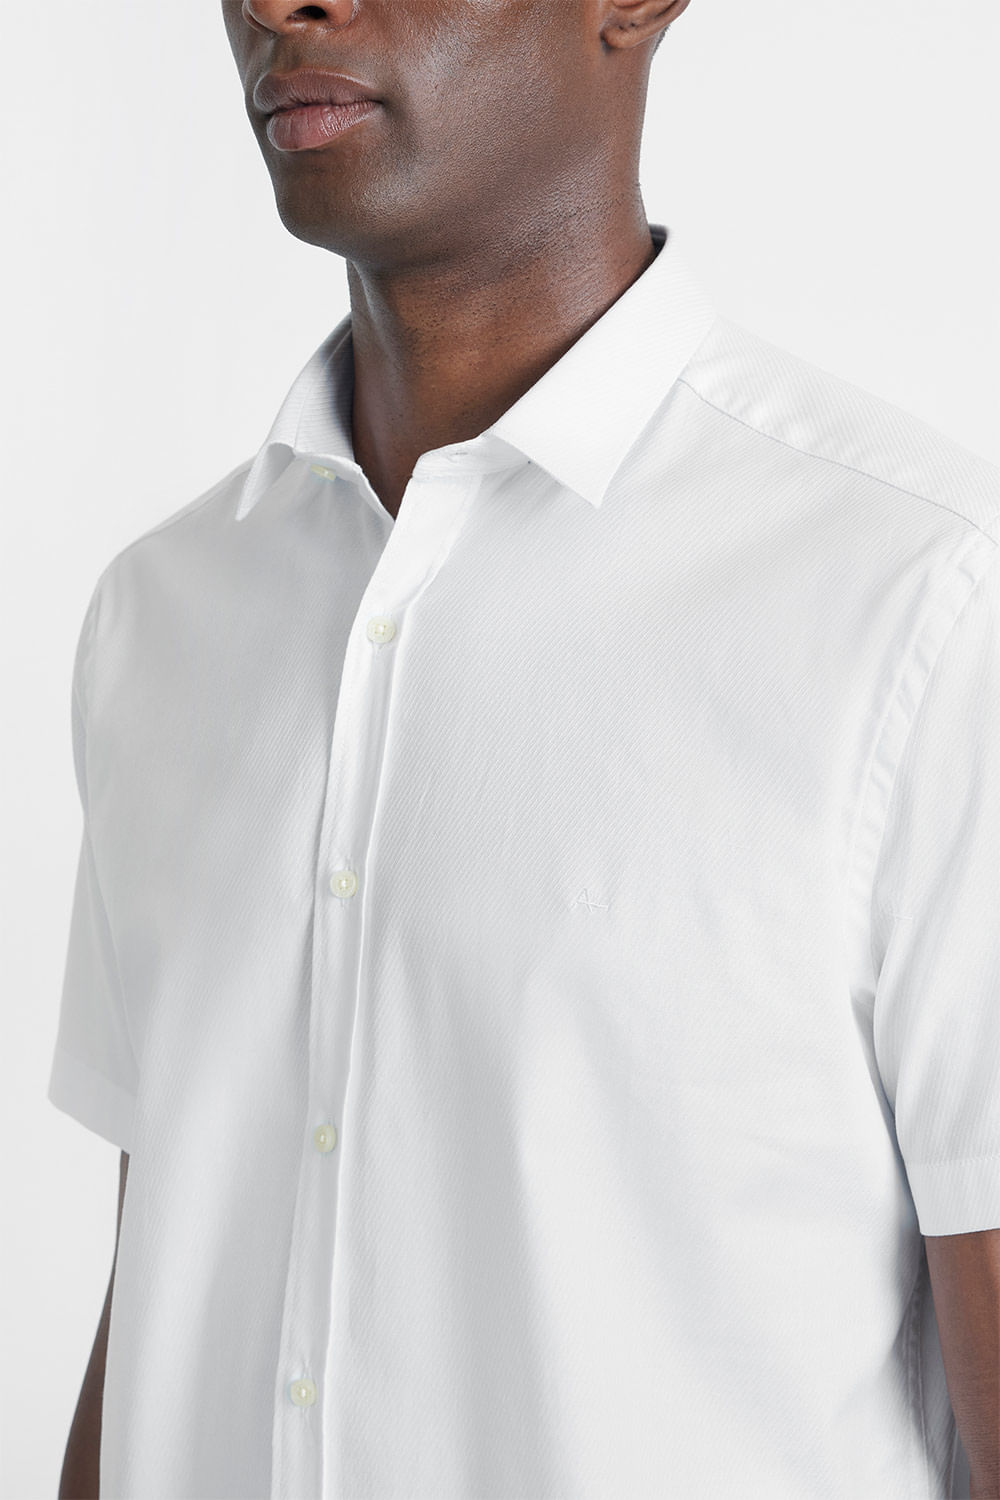 Camisa Manga Curta Cosmo Slim Tricoline Stretch Maquinetada Branco - Aramis  - Loja de Roupa Masculina: Polo, Camisa, Alfaiataria e mais